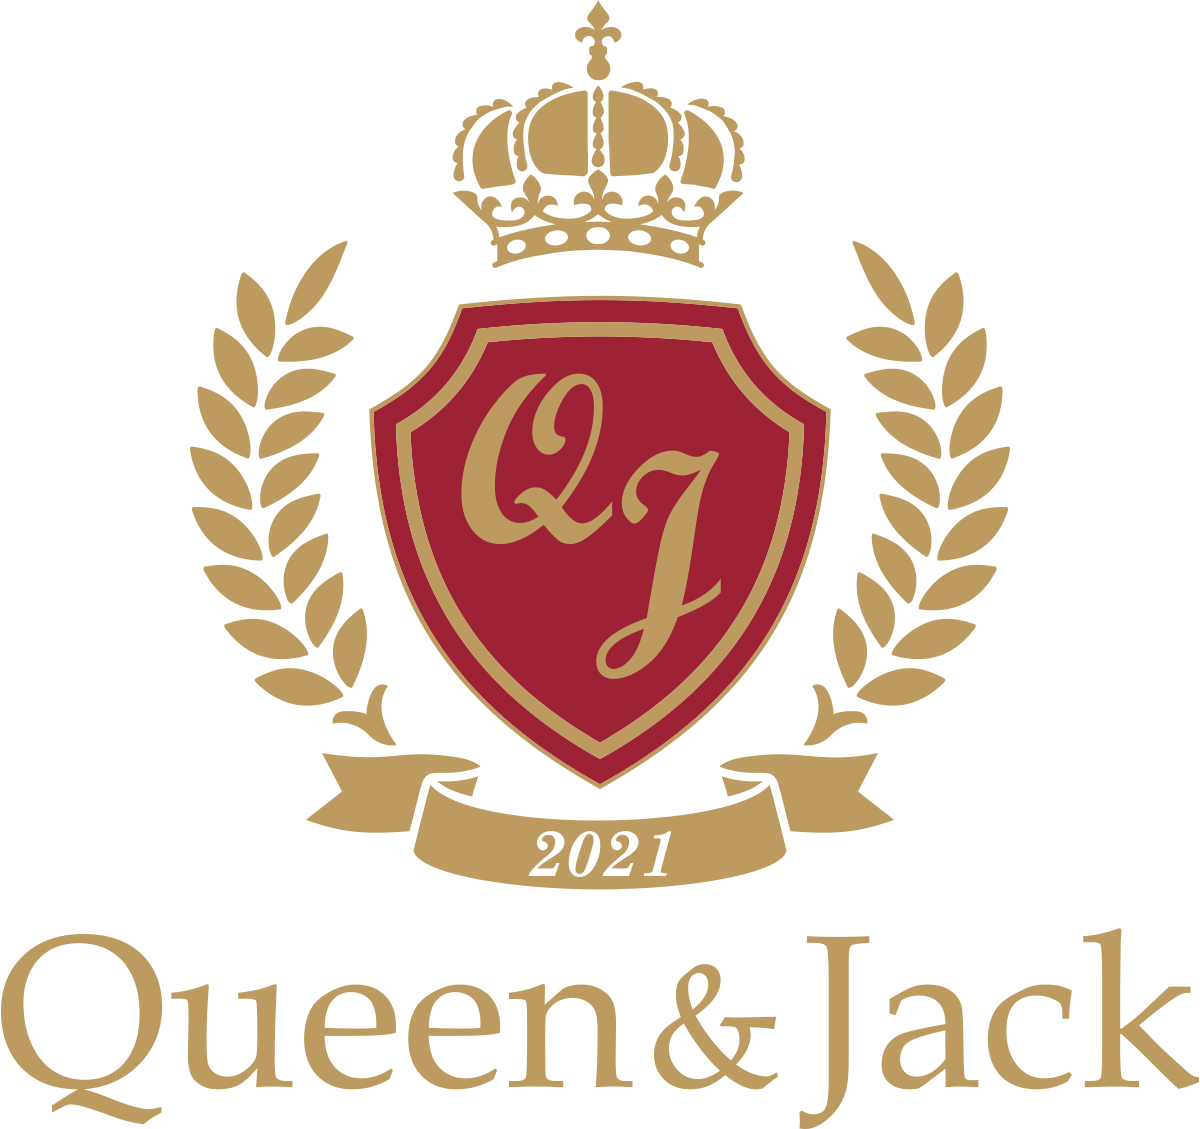 Queen&Jack